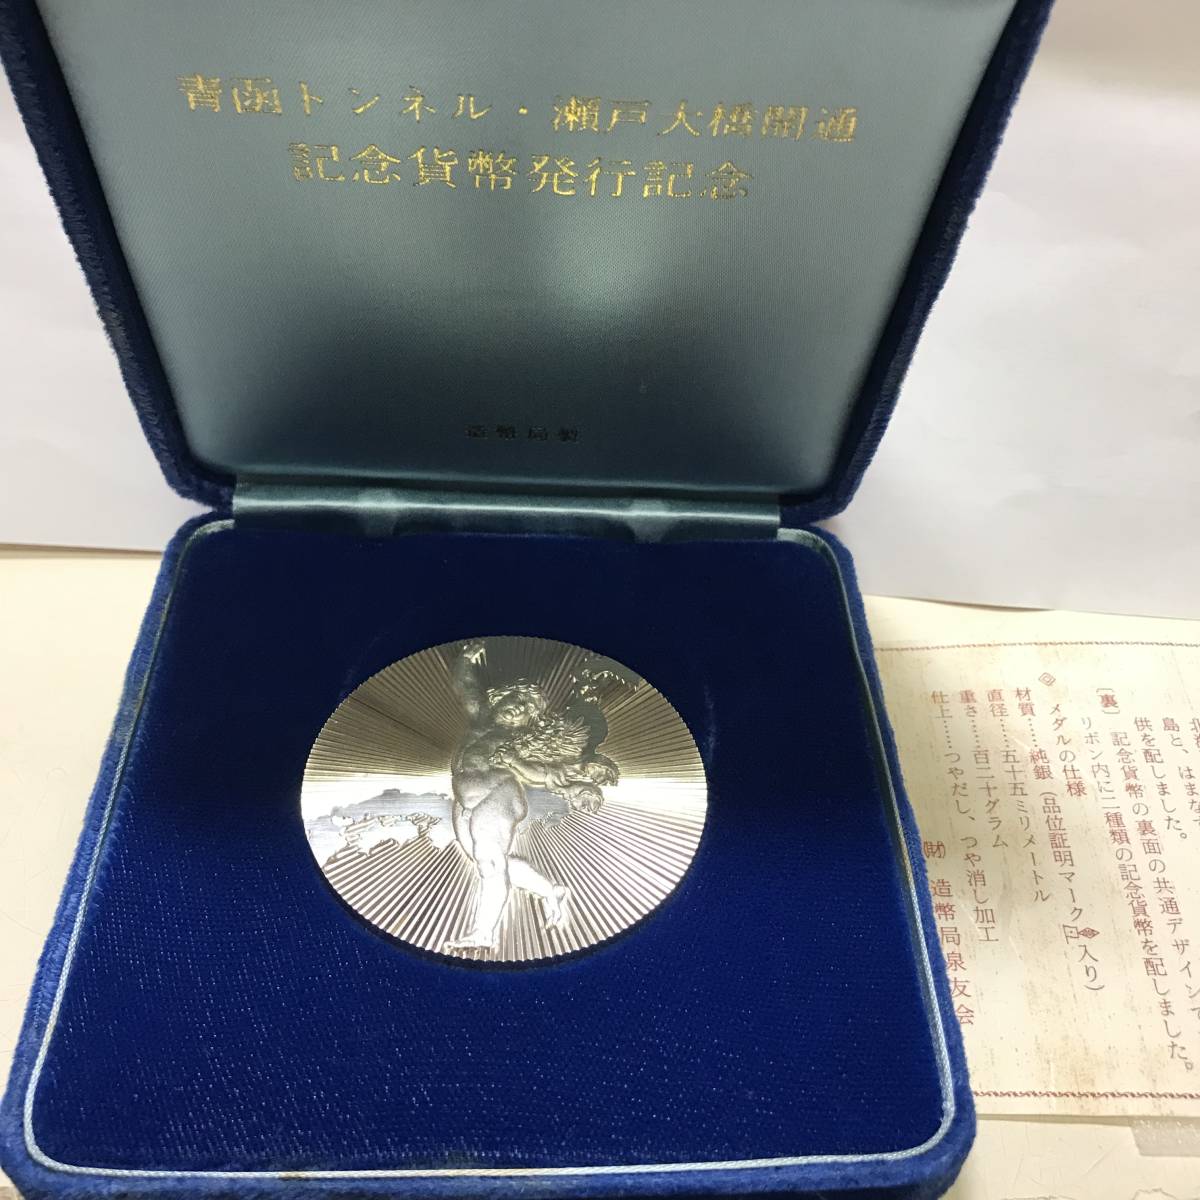 青函トンネル開通記念貨幣及び瀬戸大橋開通記念貨幣発行記念メダル